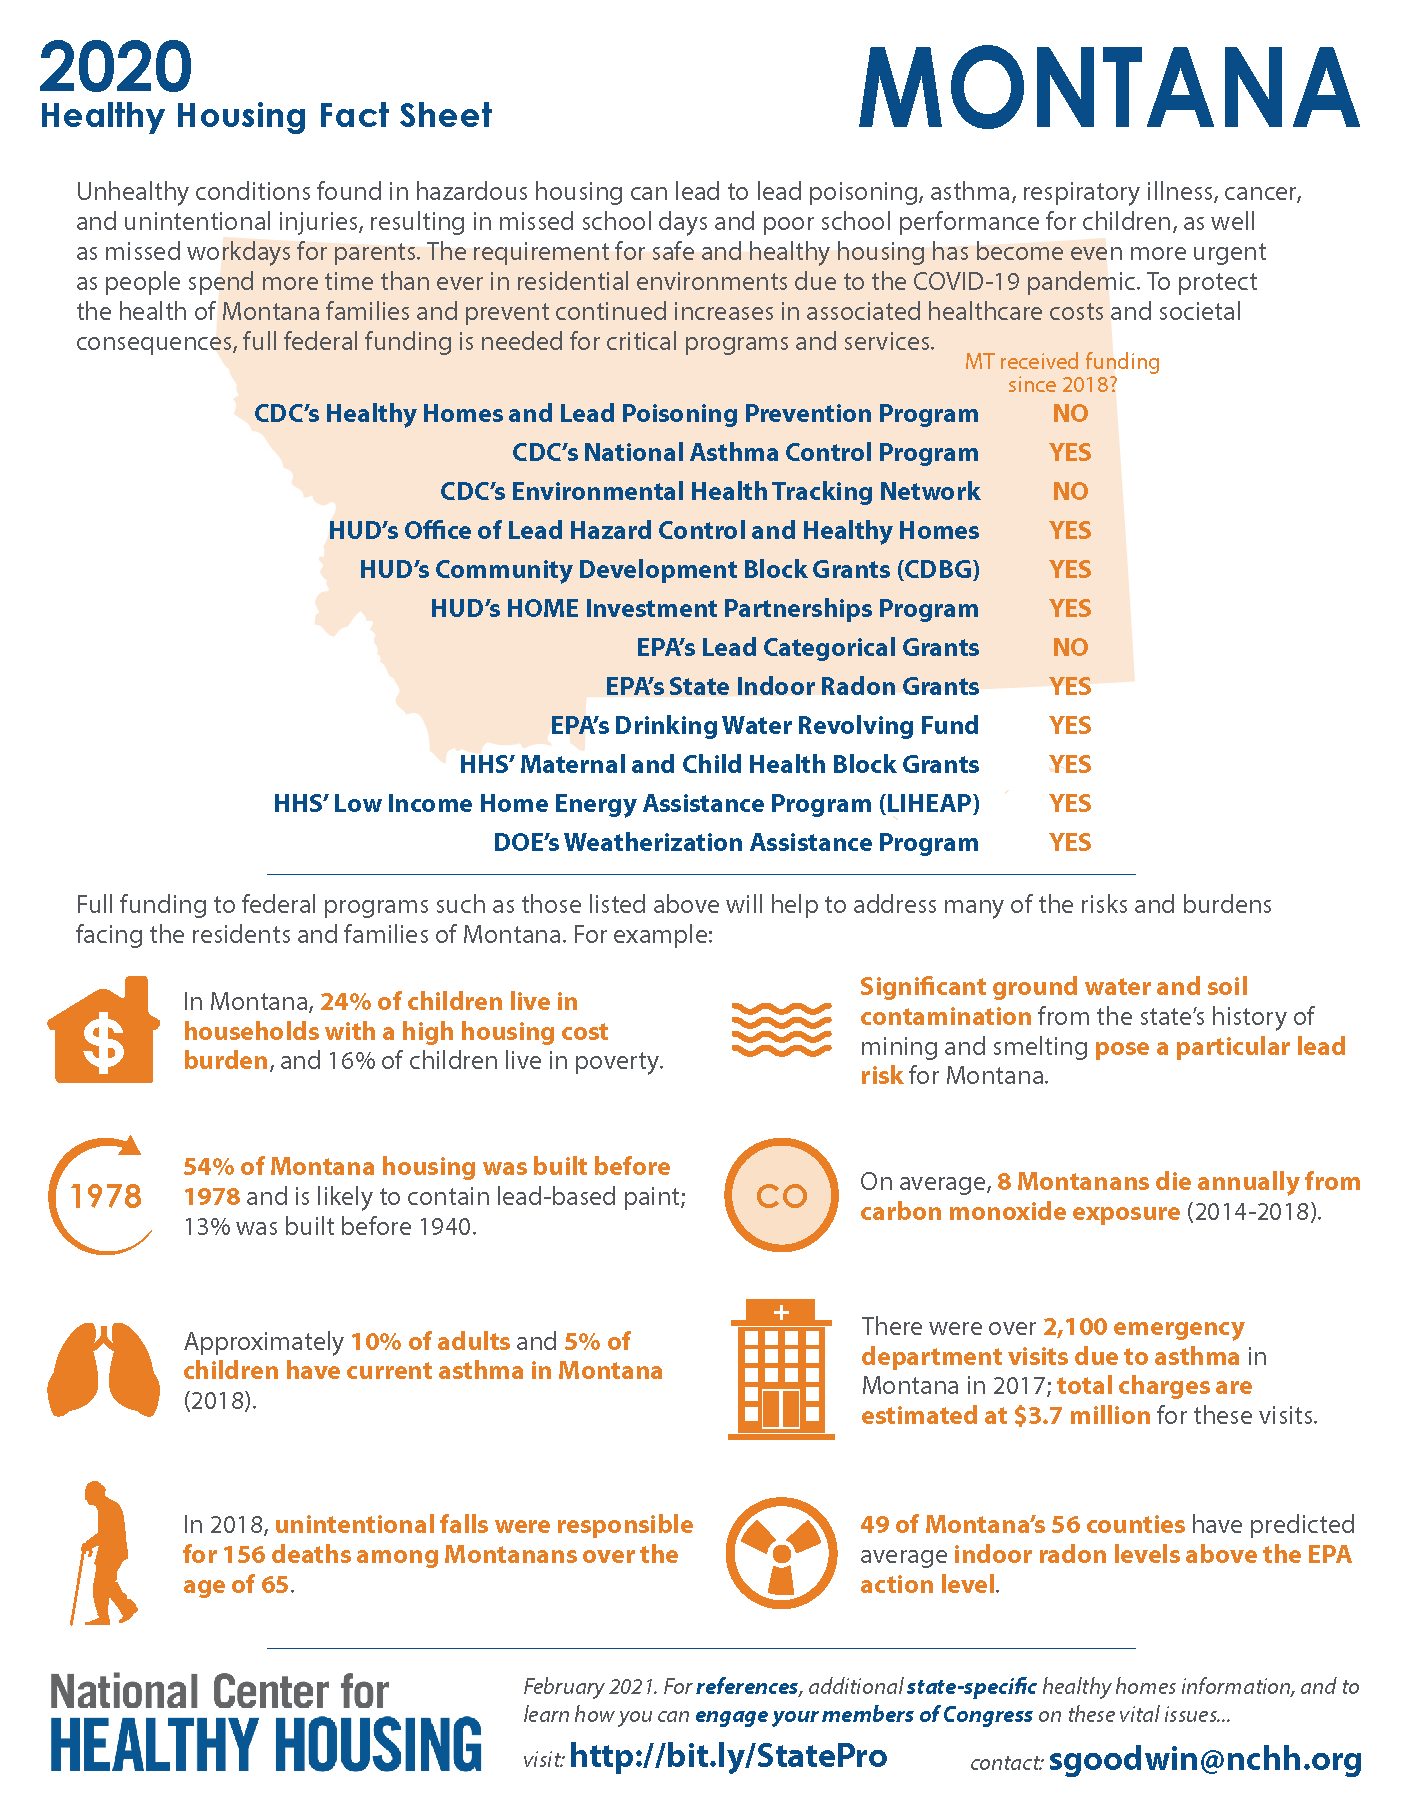 Healthy Housing Fact Sheet - Montana 2020